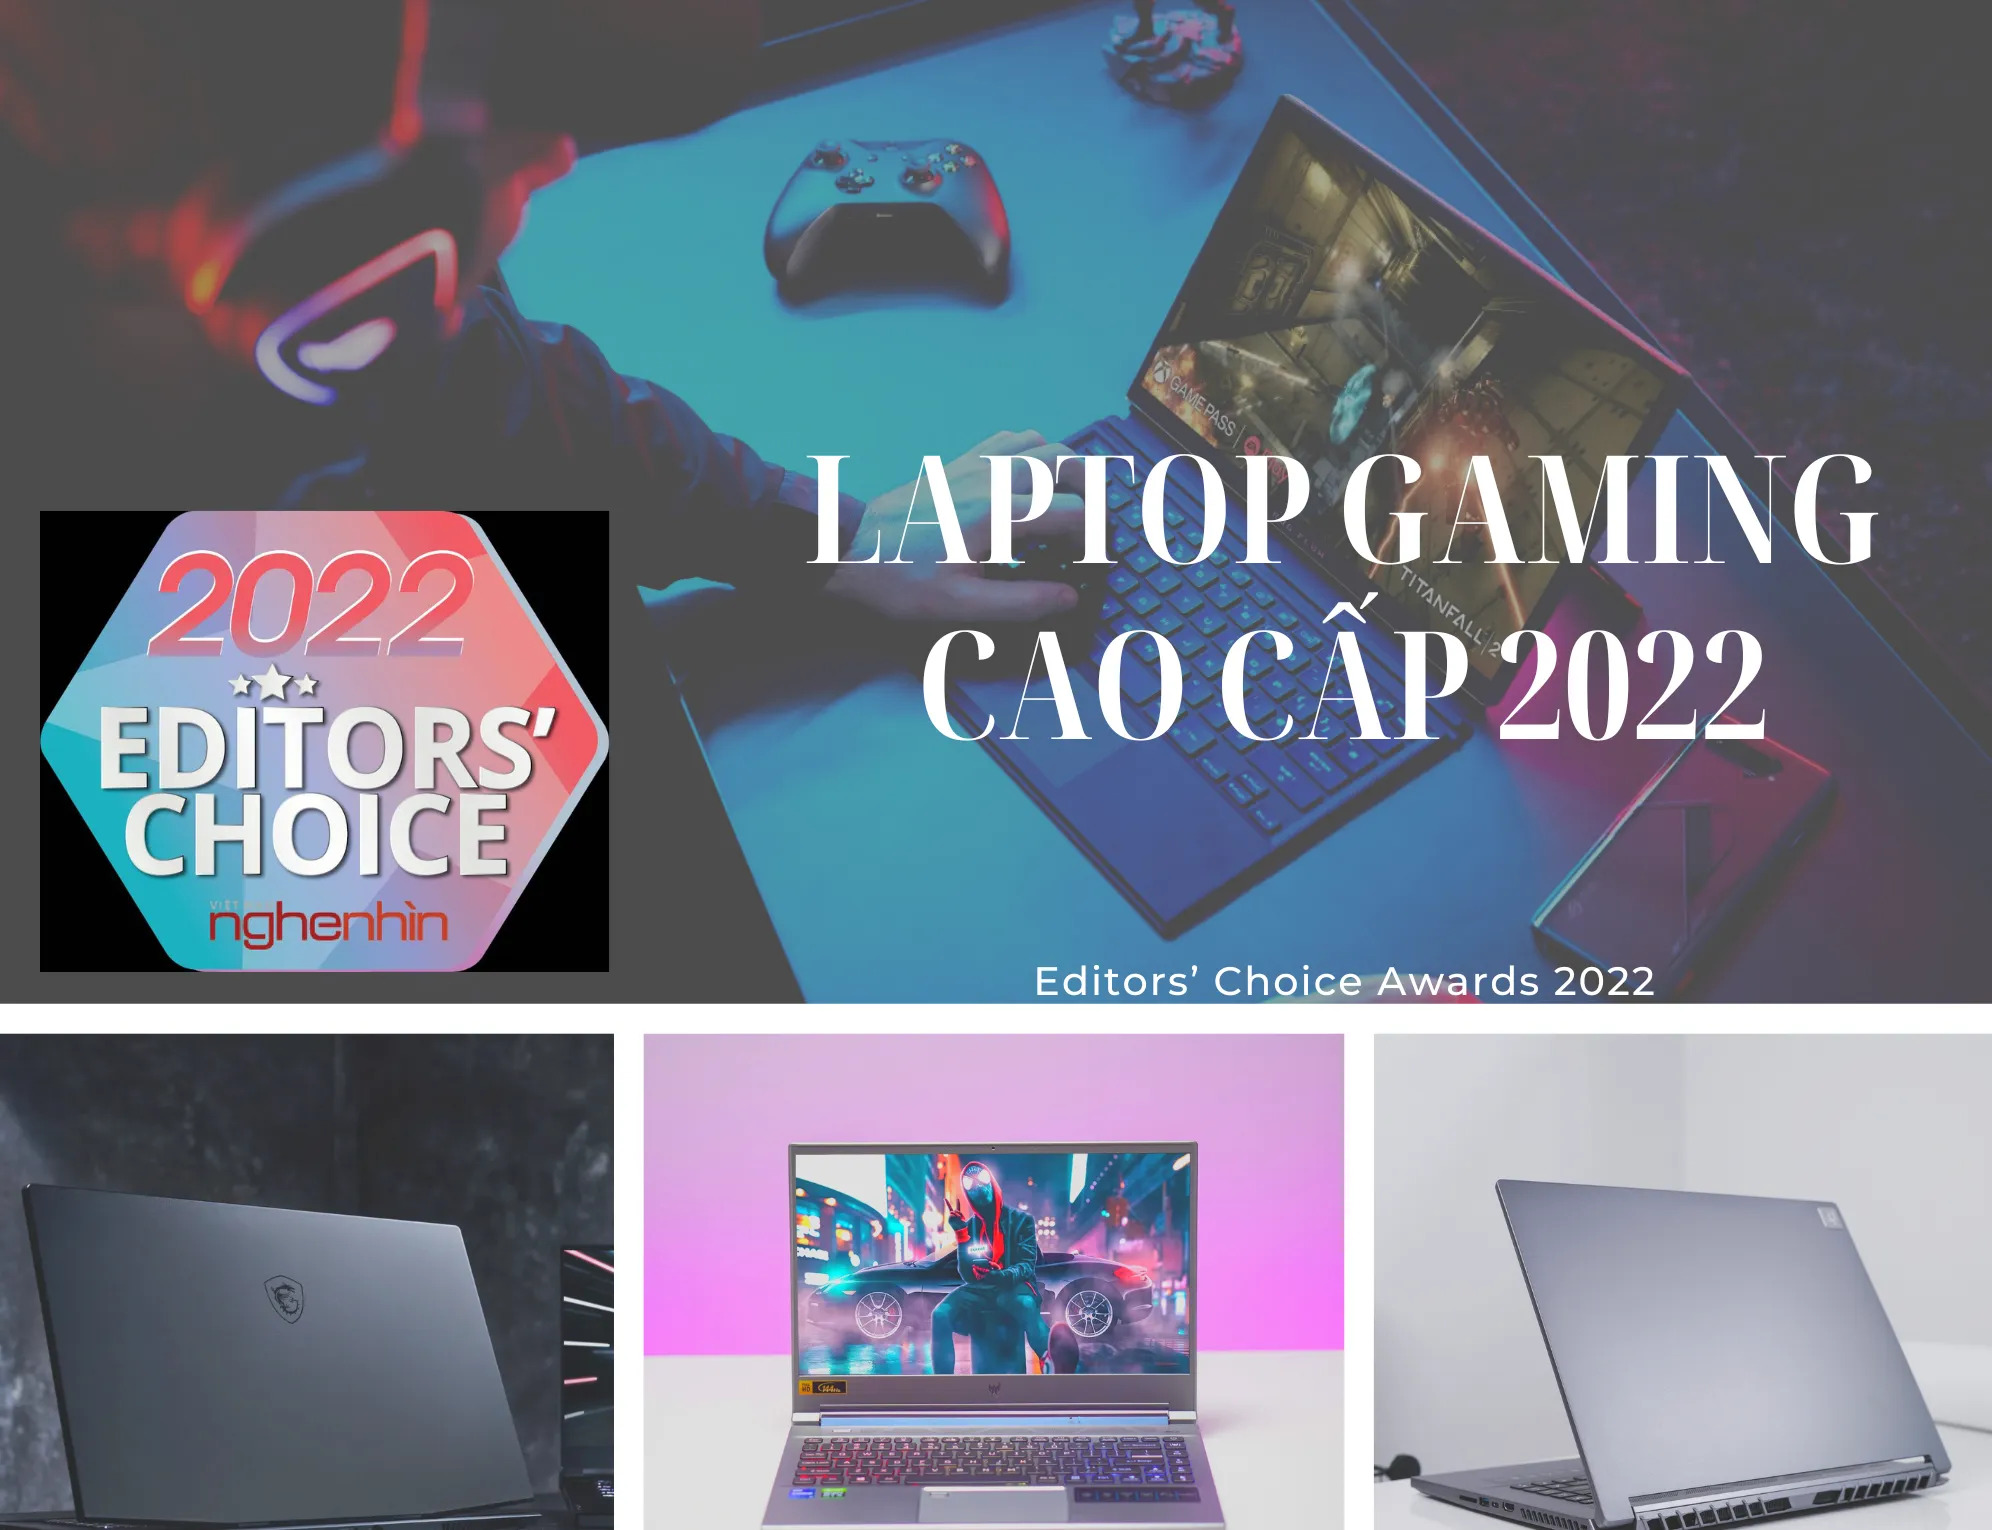 Editors’ Choice Awards 2022: Laptop gaming cao cấp đột phá của năm